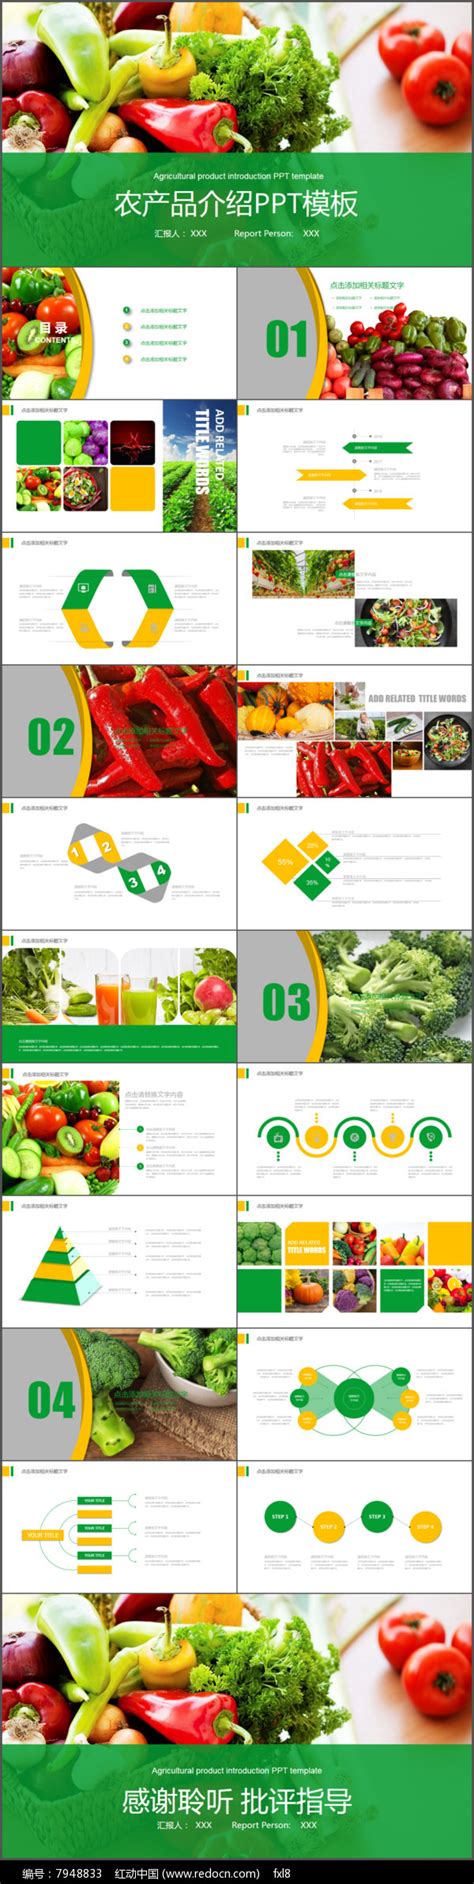 简约绿色生态农业水果蔬菜农产品ppt模板-PPT牛模板网